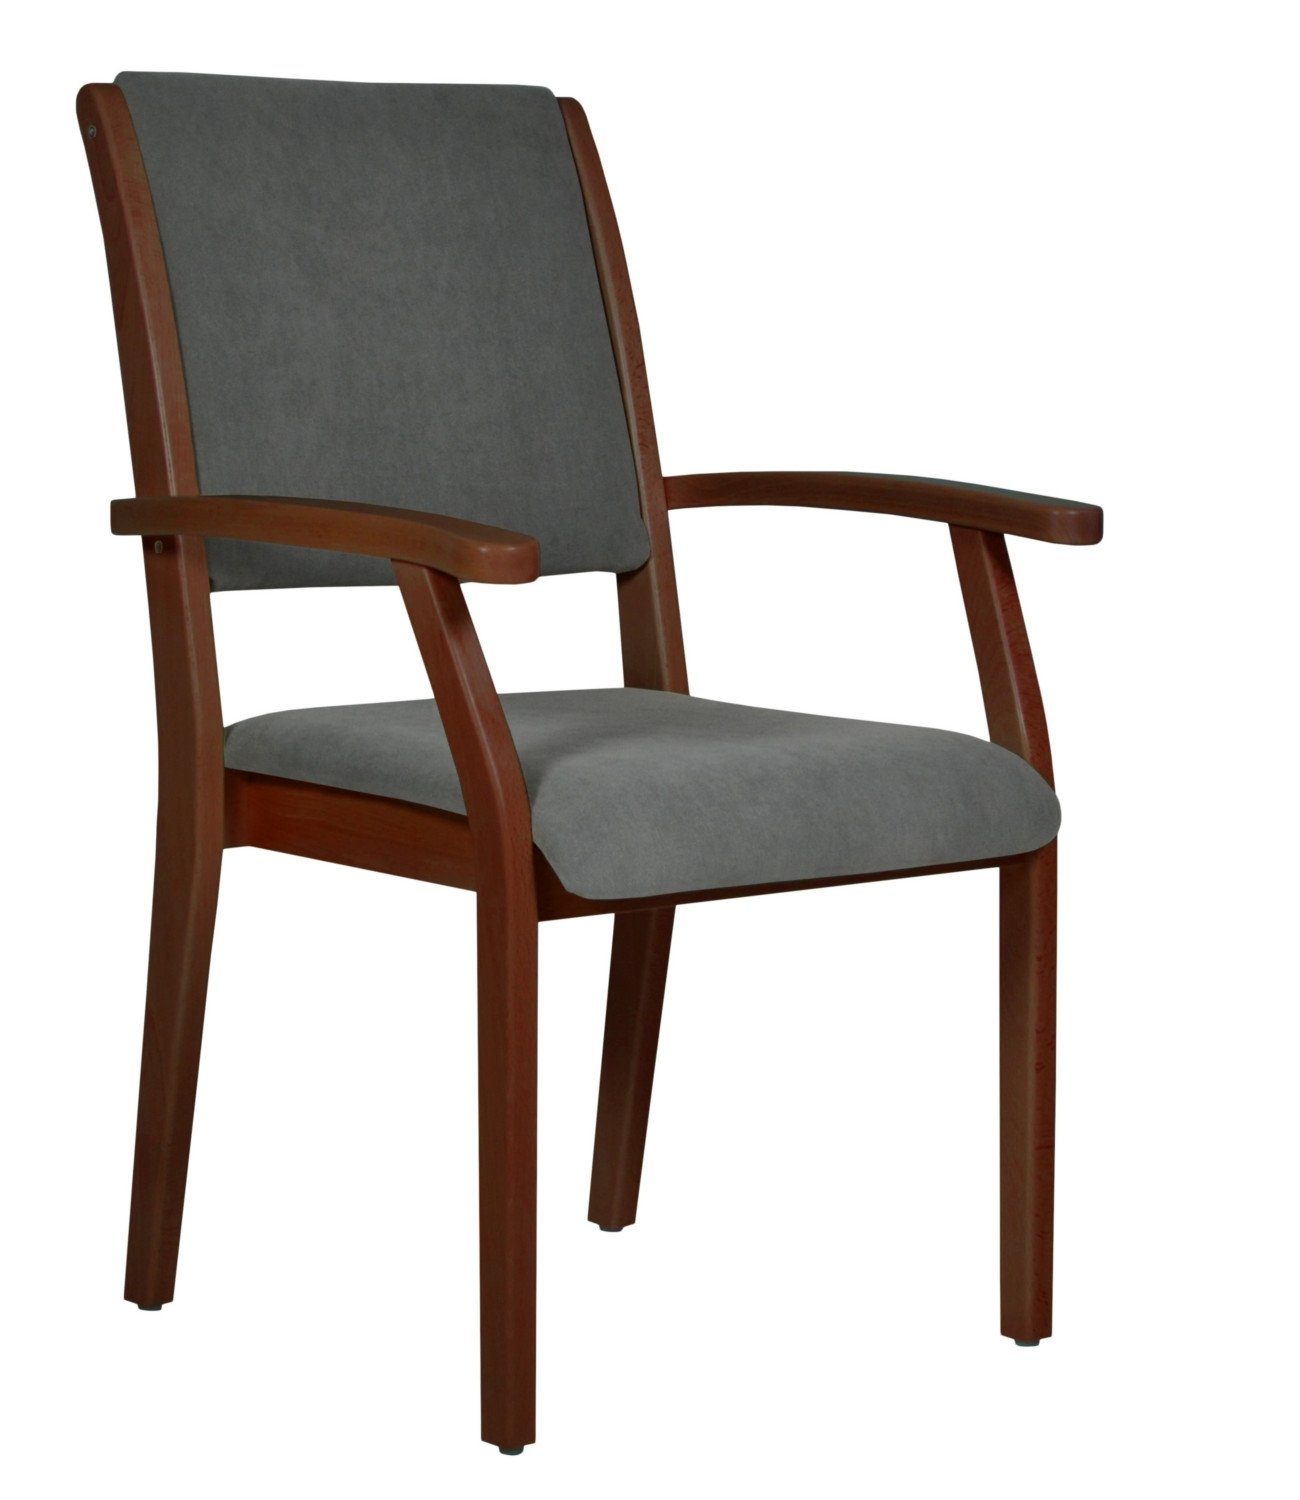 Devita Stuhl Seniorenstuhl Pflegestuhl Kerry - Verschiedene Sitzhöhen  (Einzel), stapelbar, standfest, verschieden Sitzhöhe wählbar, versch.  Bezüge wählbar